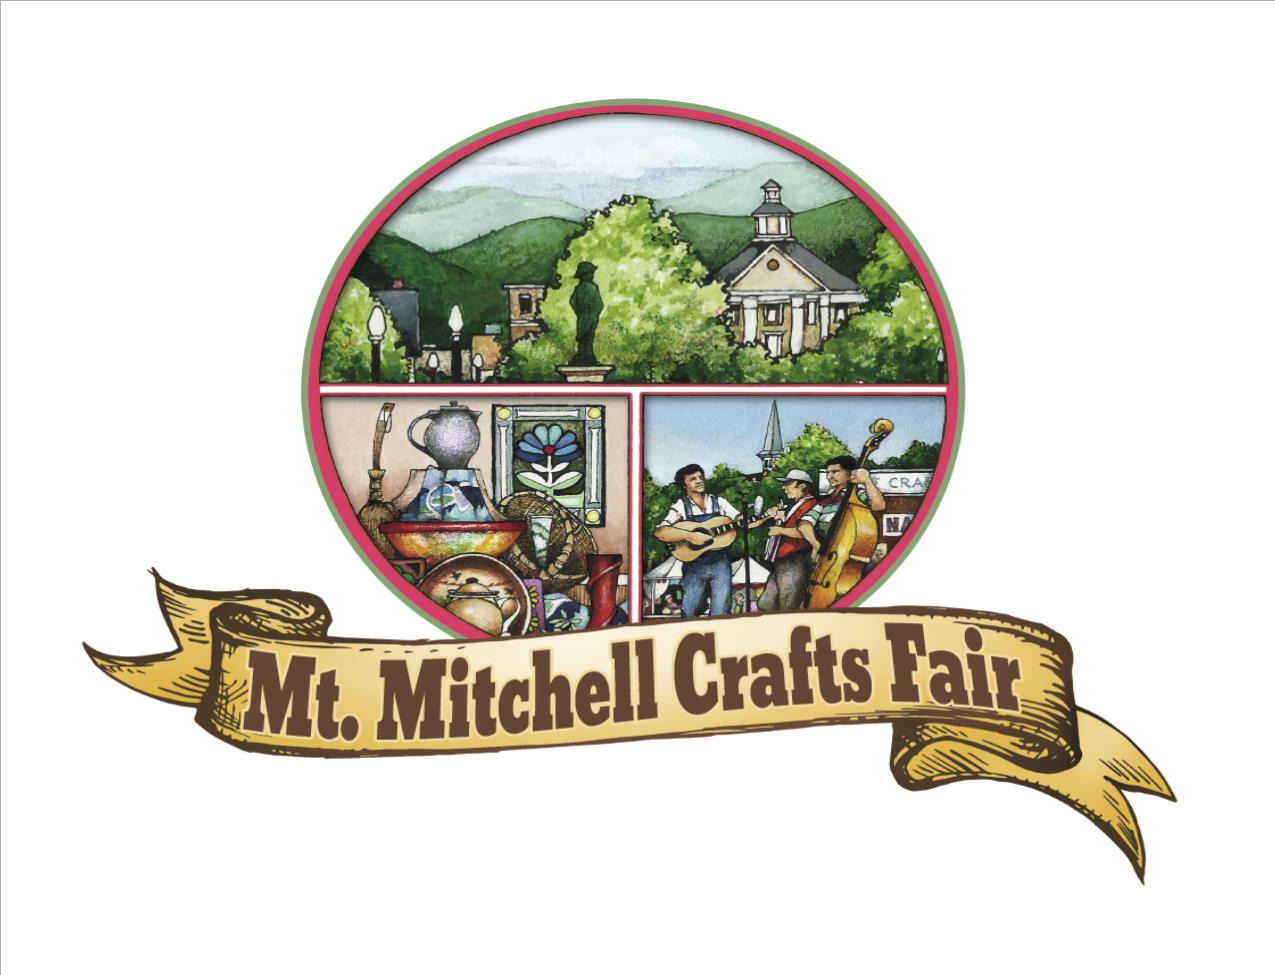 Mt. Mitchell Crafts Fair